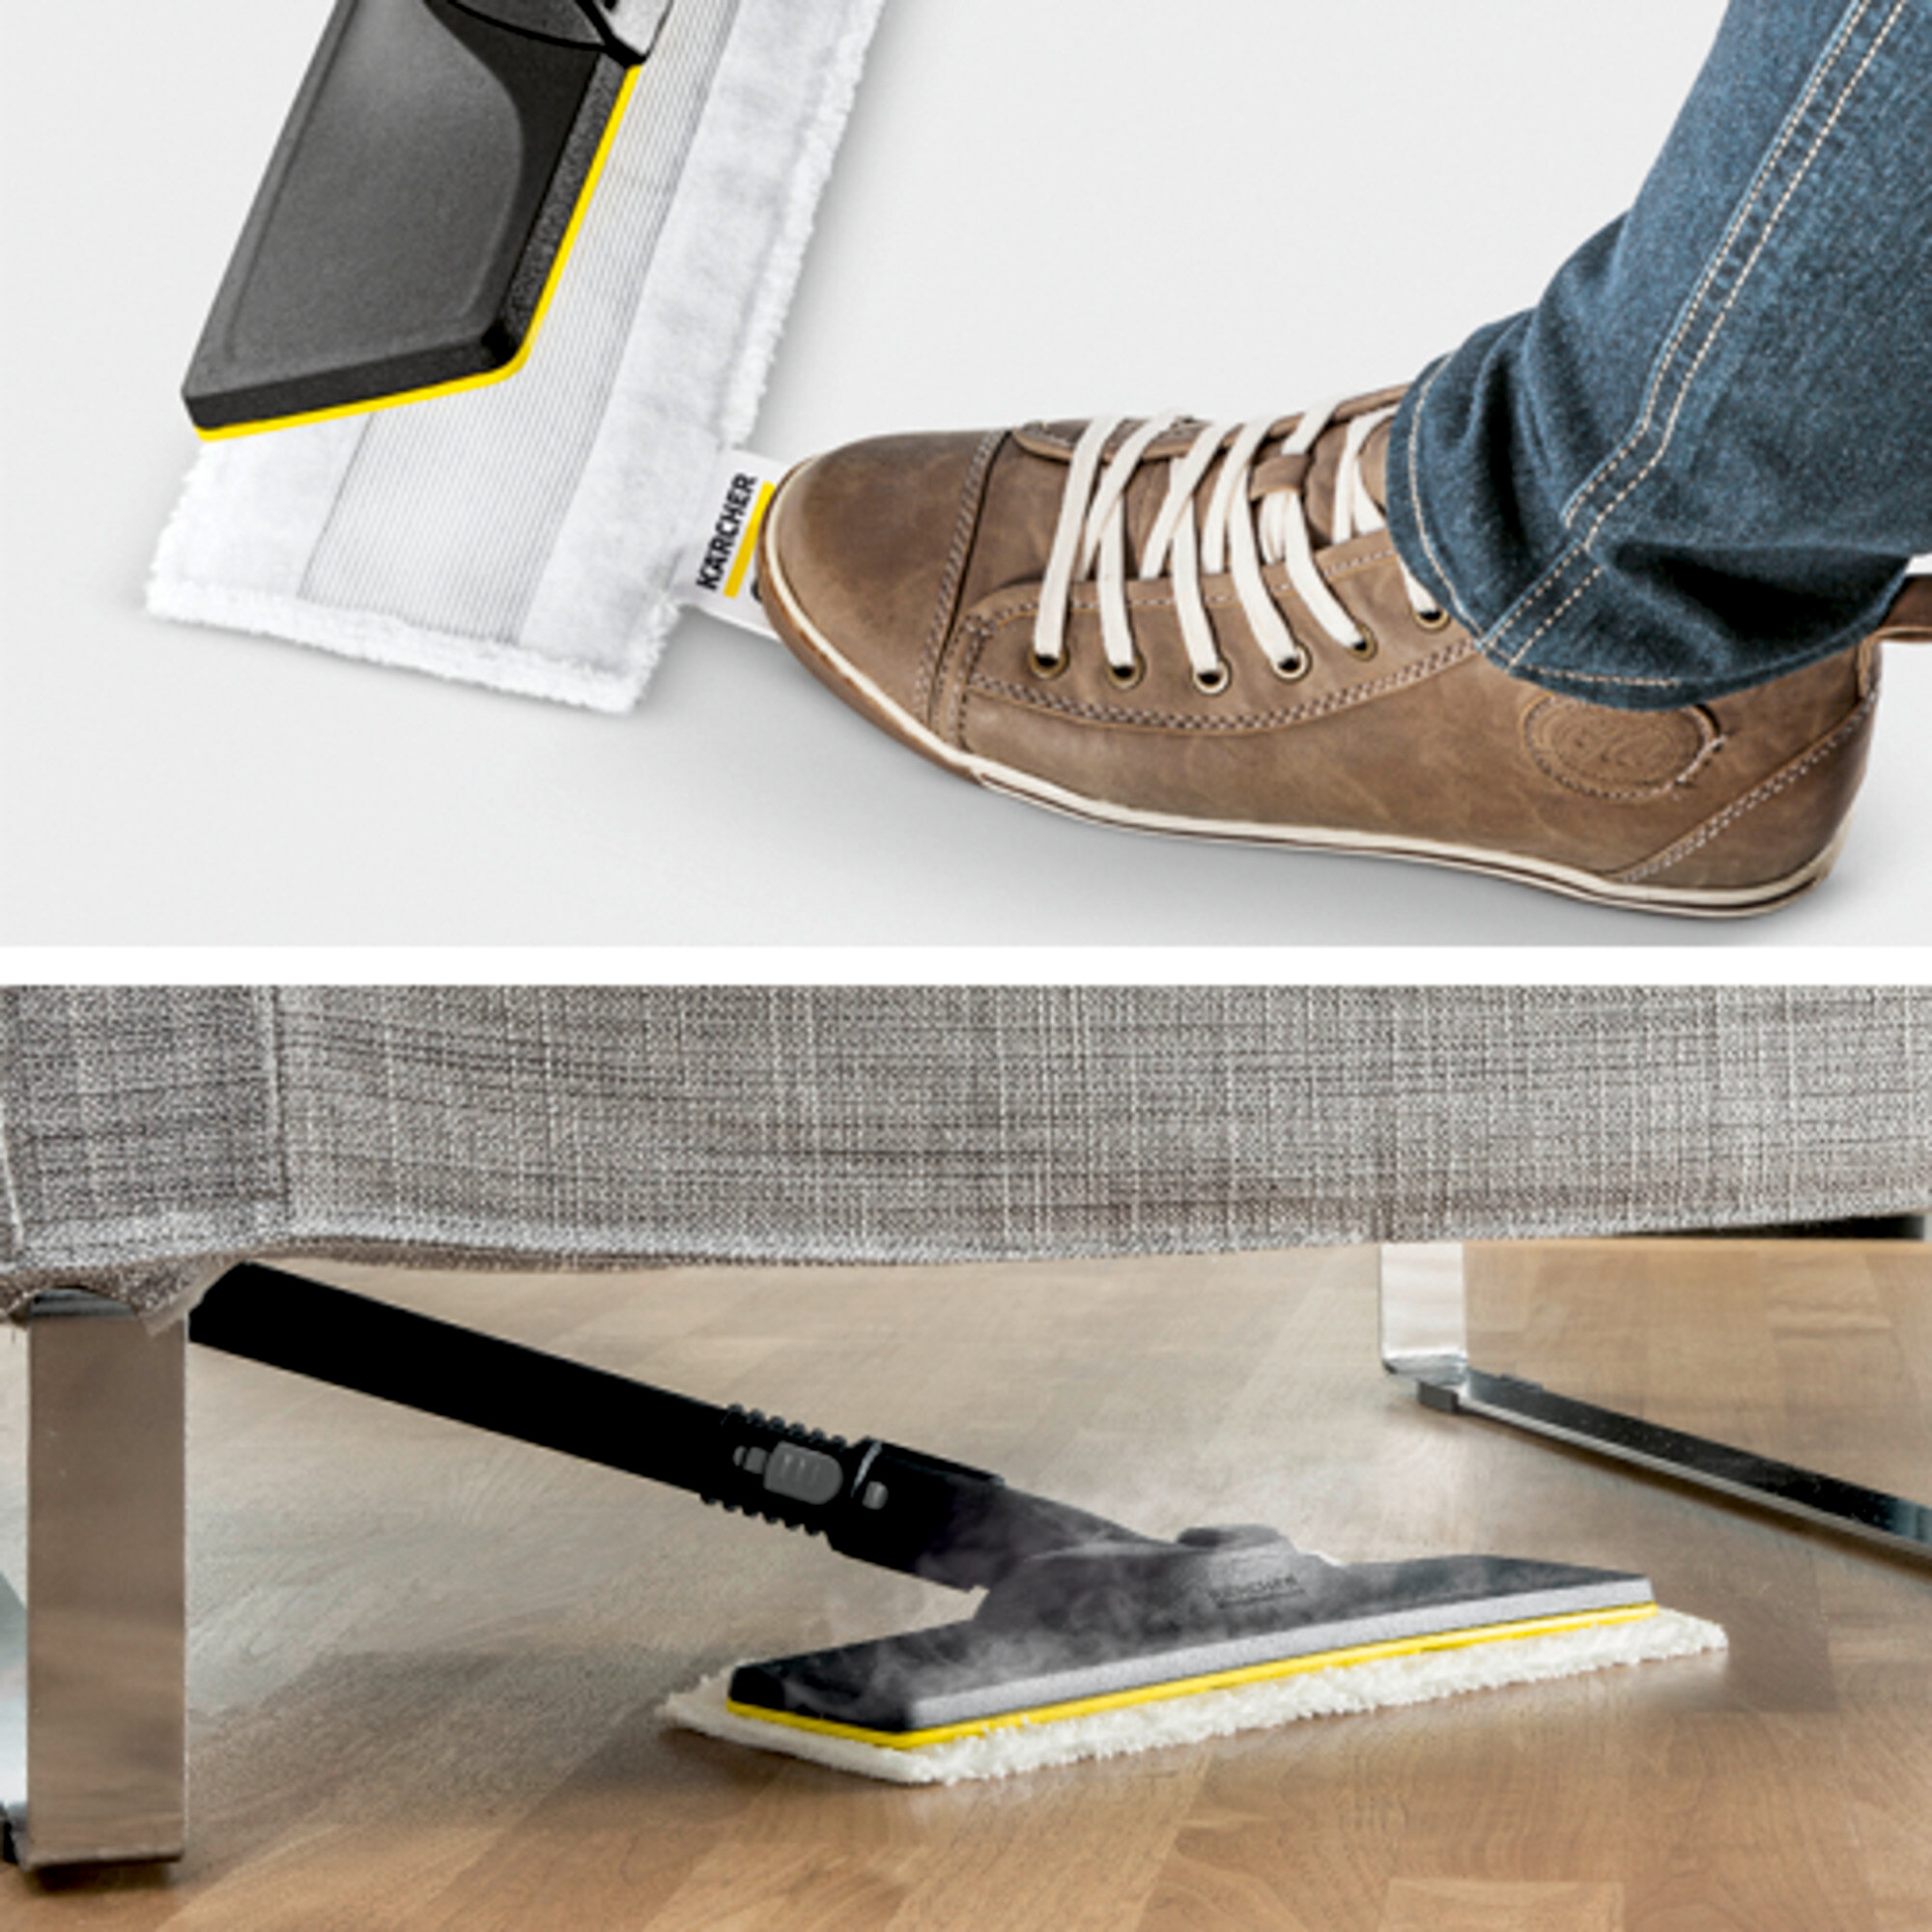 Garo valytuvai SC 1 EasyFix Premium (white): Grindų valymo rinkinys EasyFix su lanksčia jungtimi ant grindų antgalio ir lipnia fiksacijos sistema grindų šluostei.